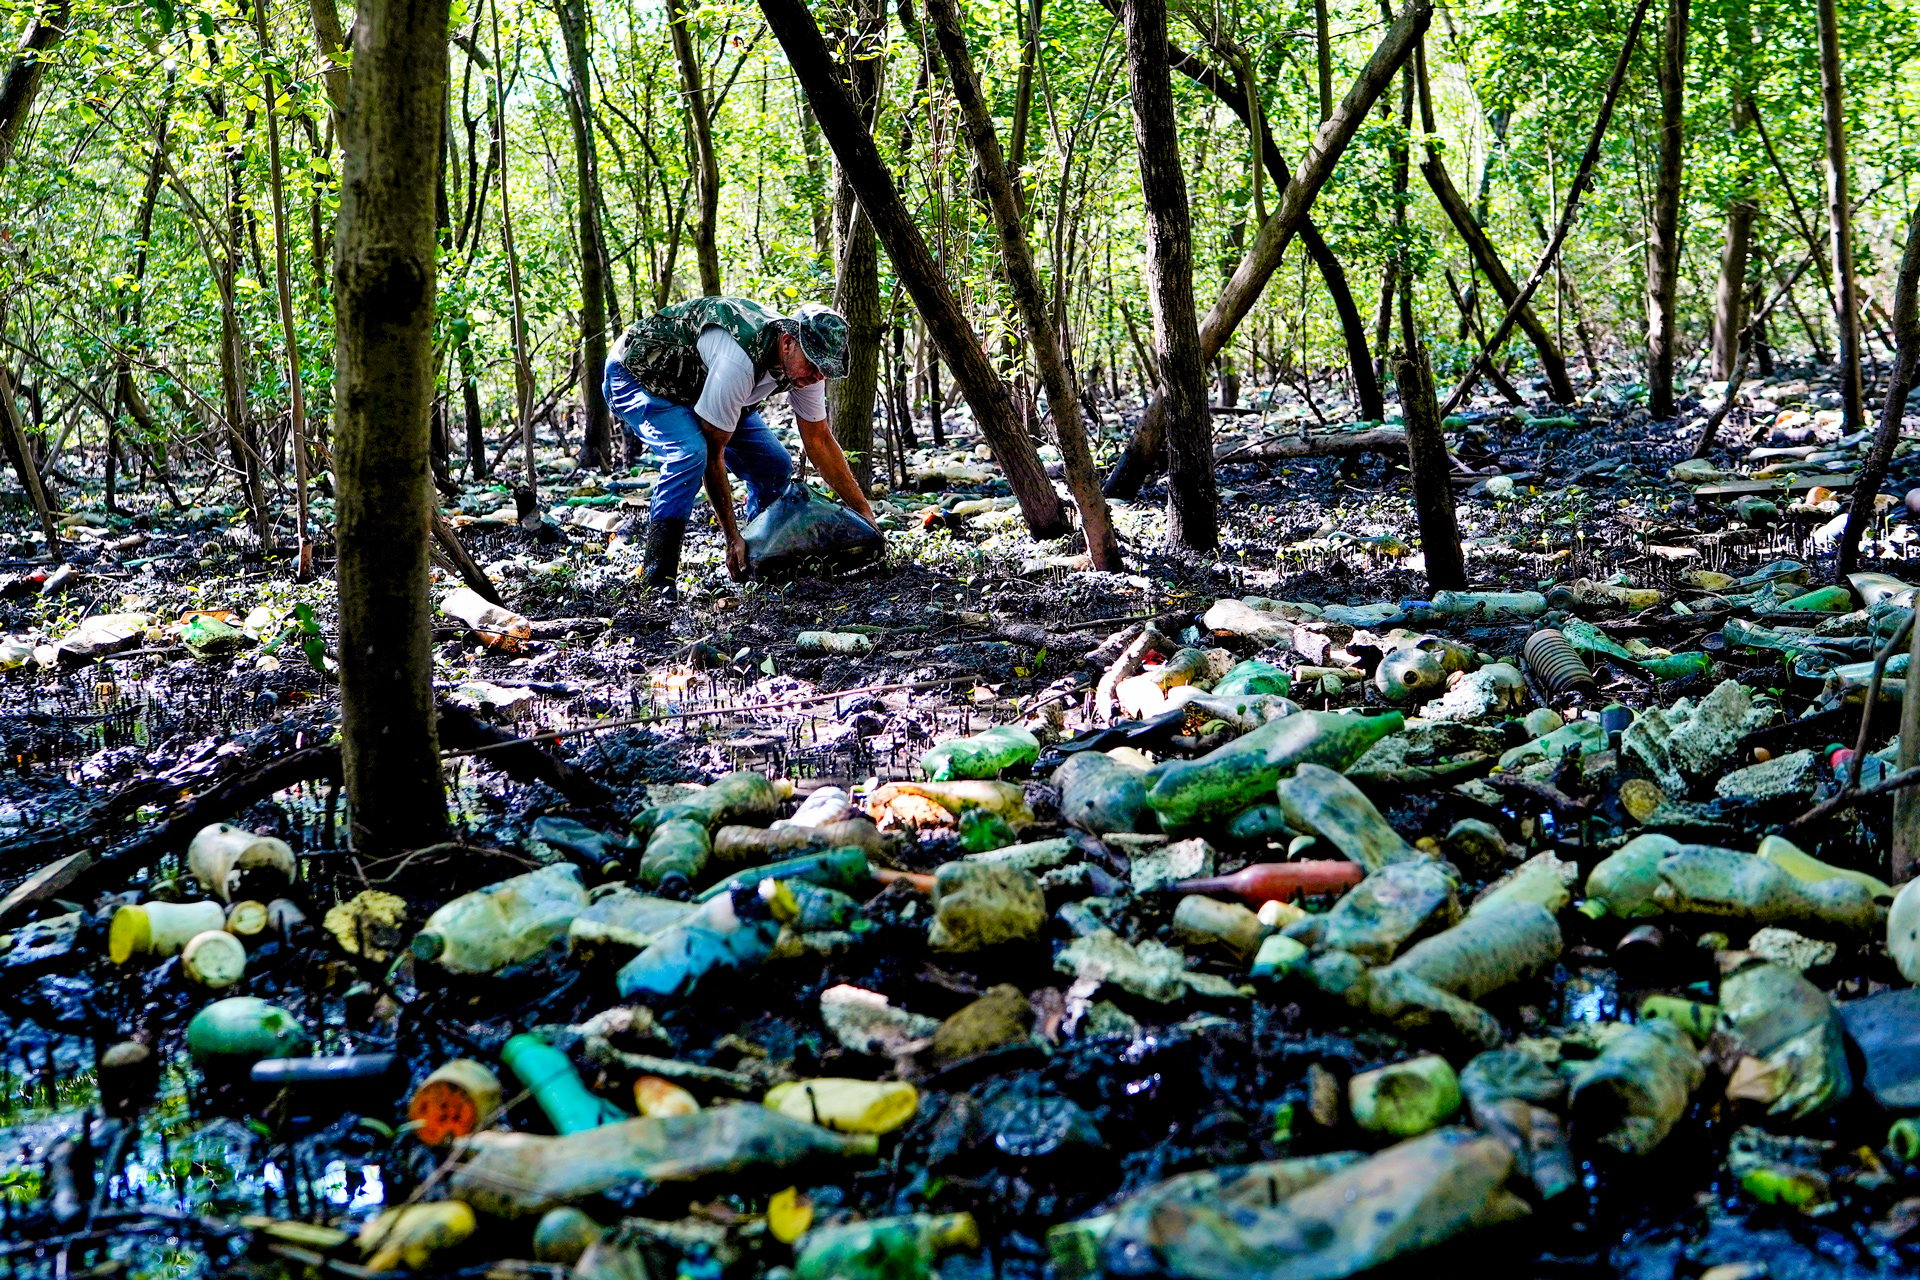 Anúncio foi feito após publicação de reportagem de A Gazeta que denunciou abandono de manguezal no Parque da Manteigueira, em Vila Velha, tomado pelo lixo na mata e no mar